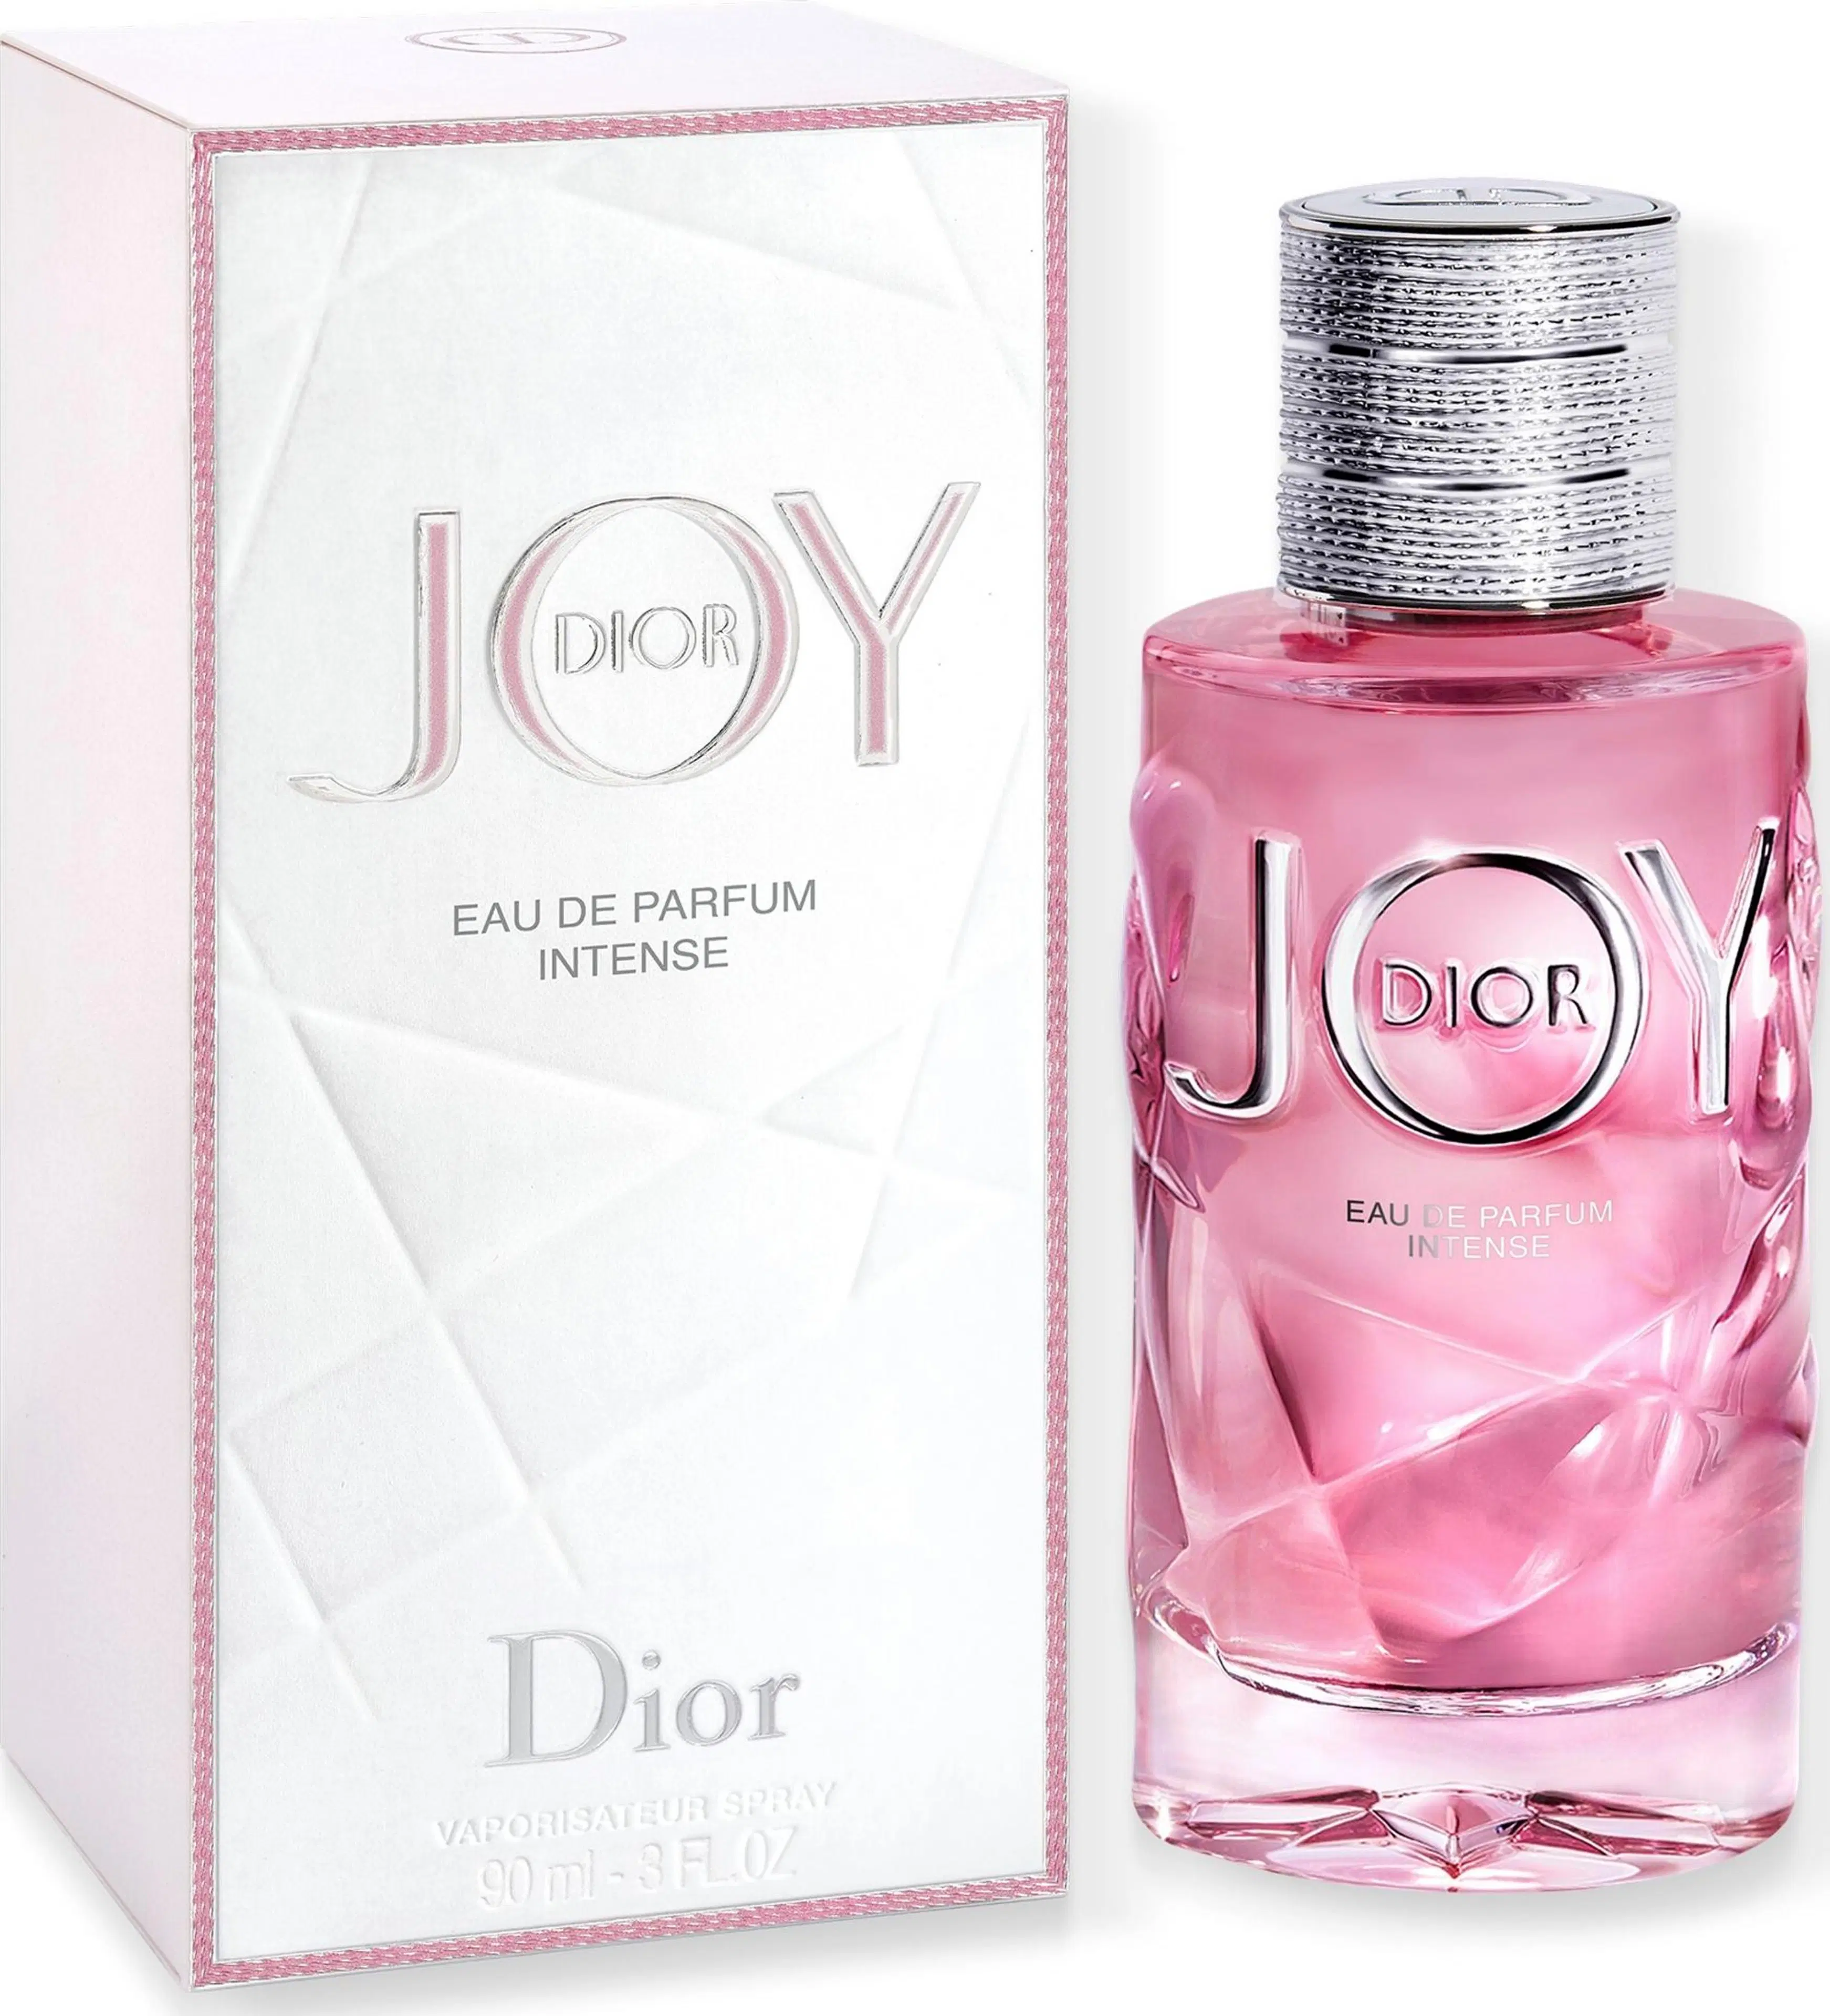 DIOR JOY by Dior EdP Intense tuoksu 90 ml